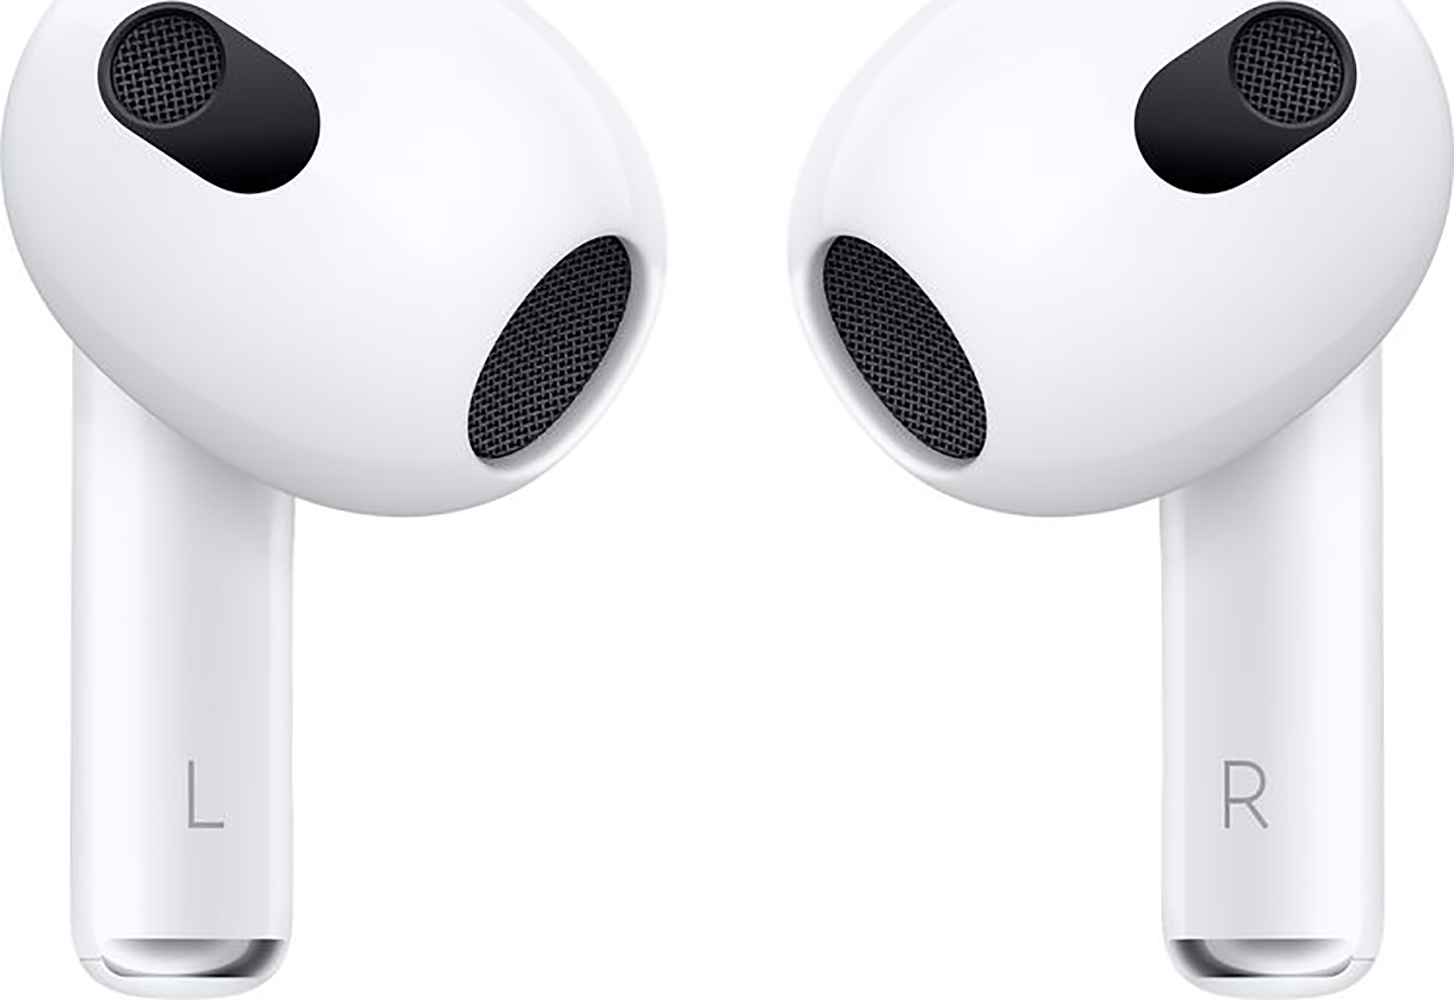 Écouteurs bouton EarPods d'Apple avec connecteur Lightning - Blanc